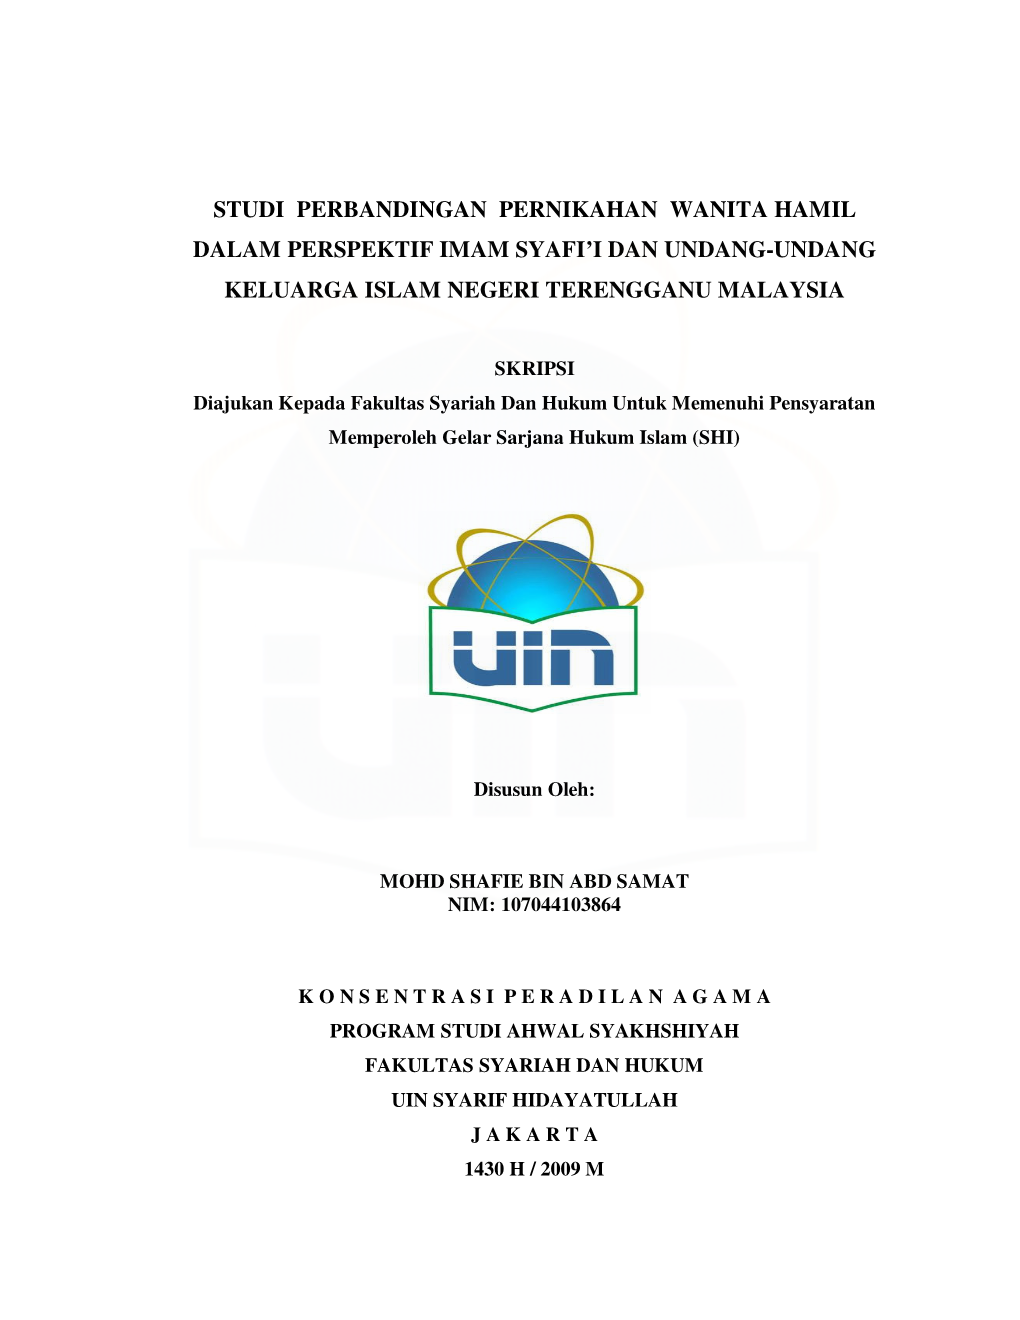 Studi Perbandingan Pernikahan Wanita Hamil Dalam Perspektif Imam Syafi’I Dan Undang-Undang Keluarga Islam Negeri Terengganu Malaysia